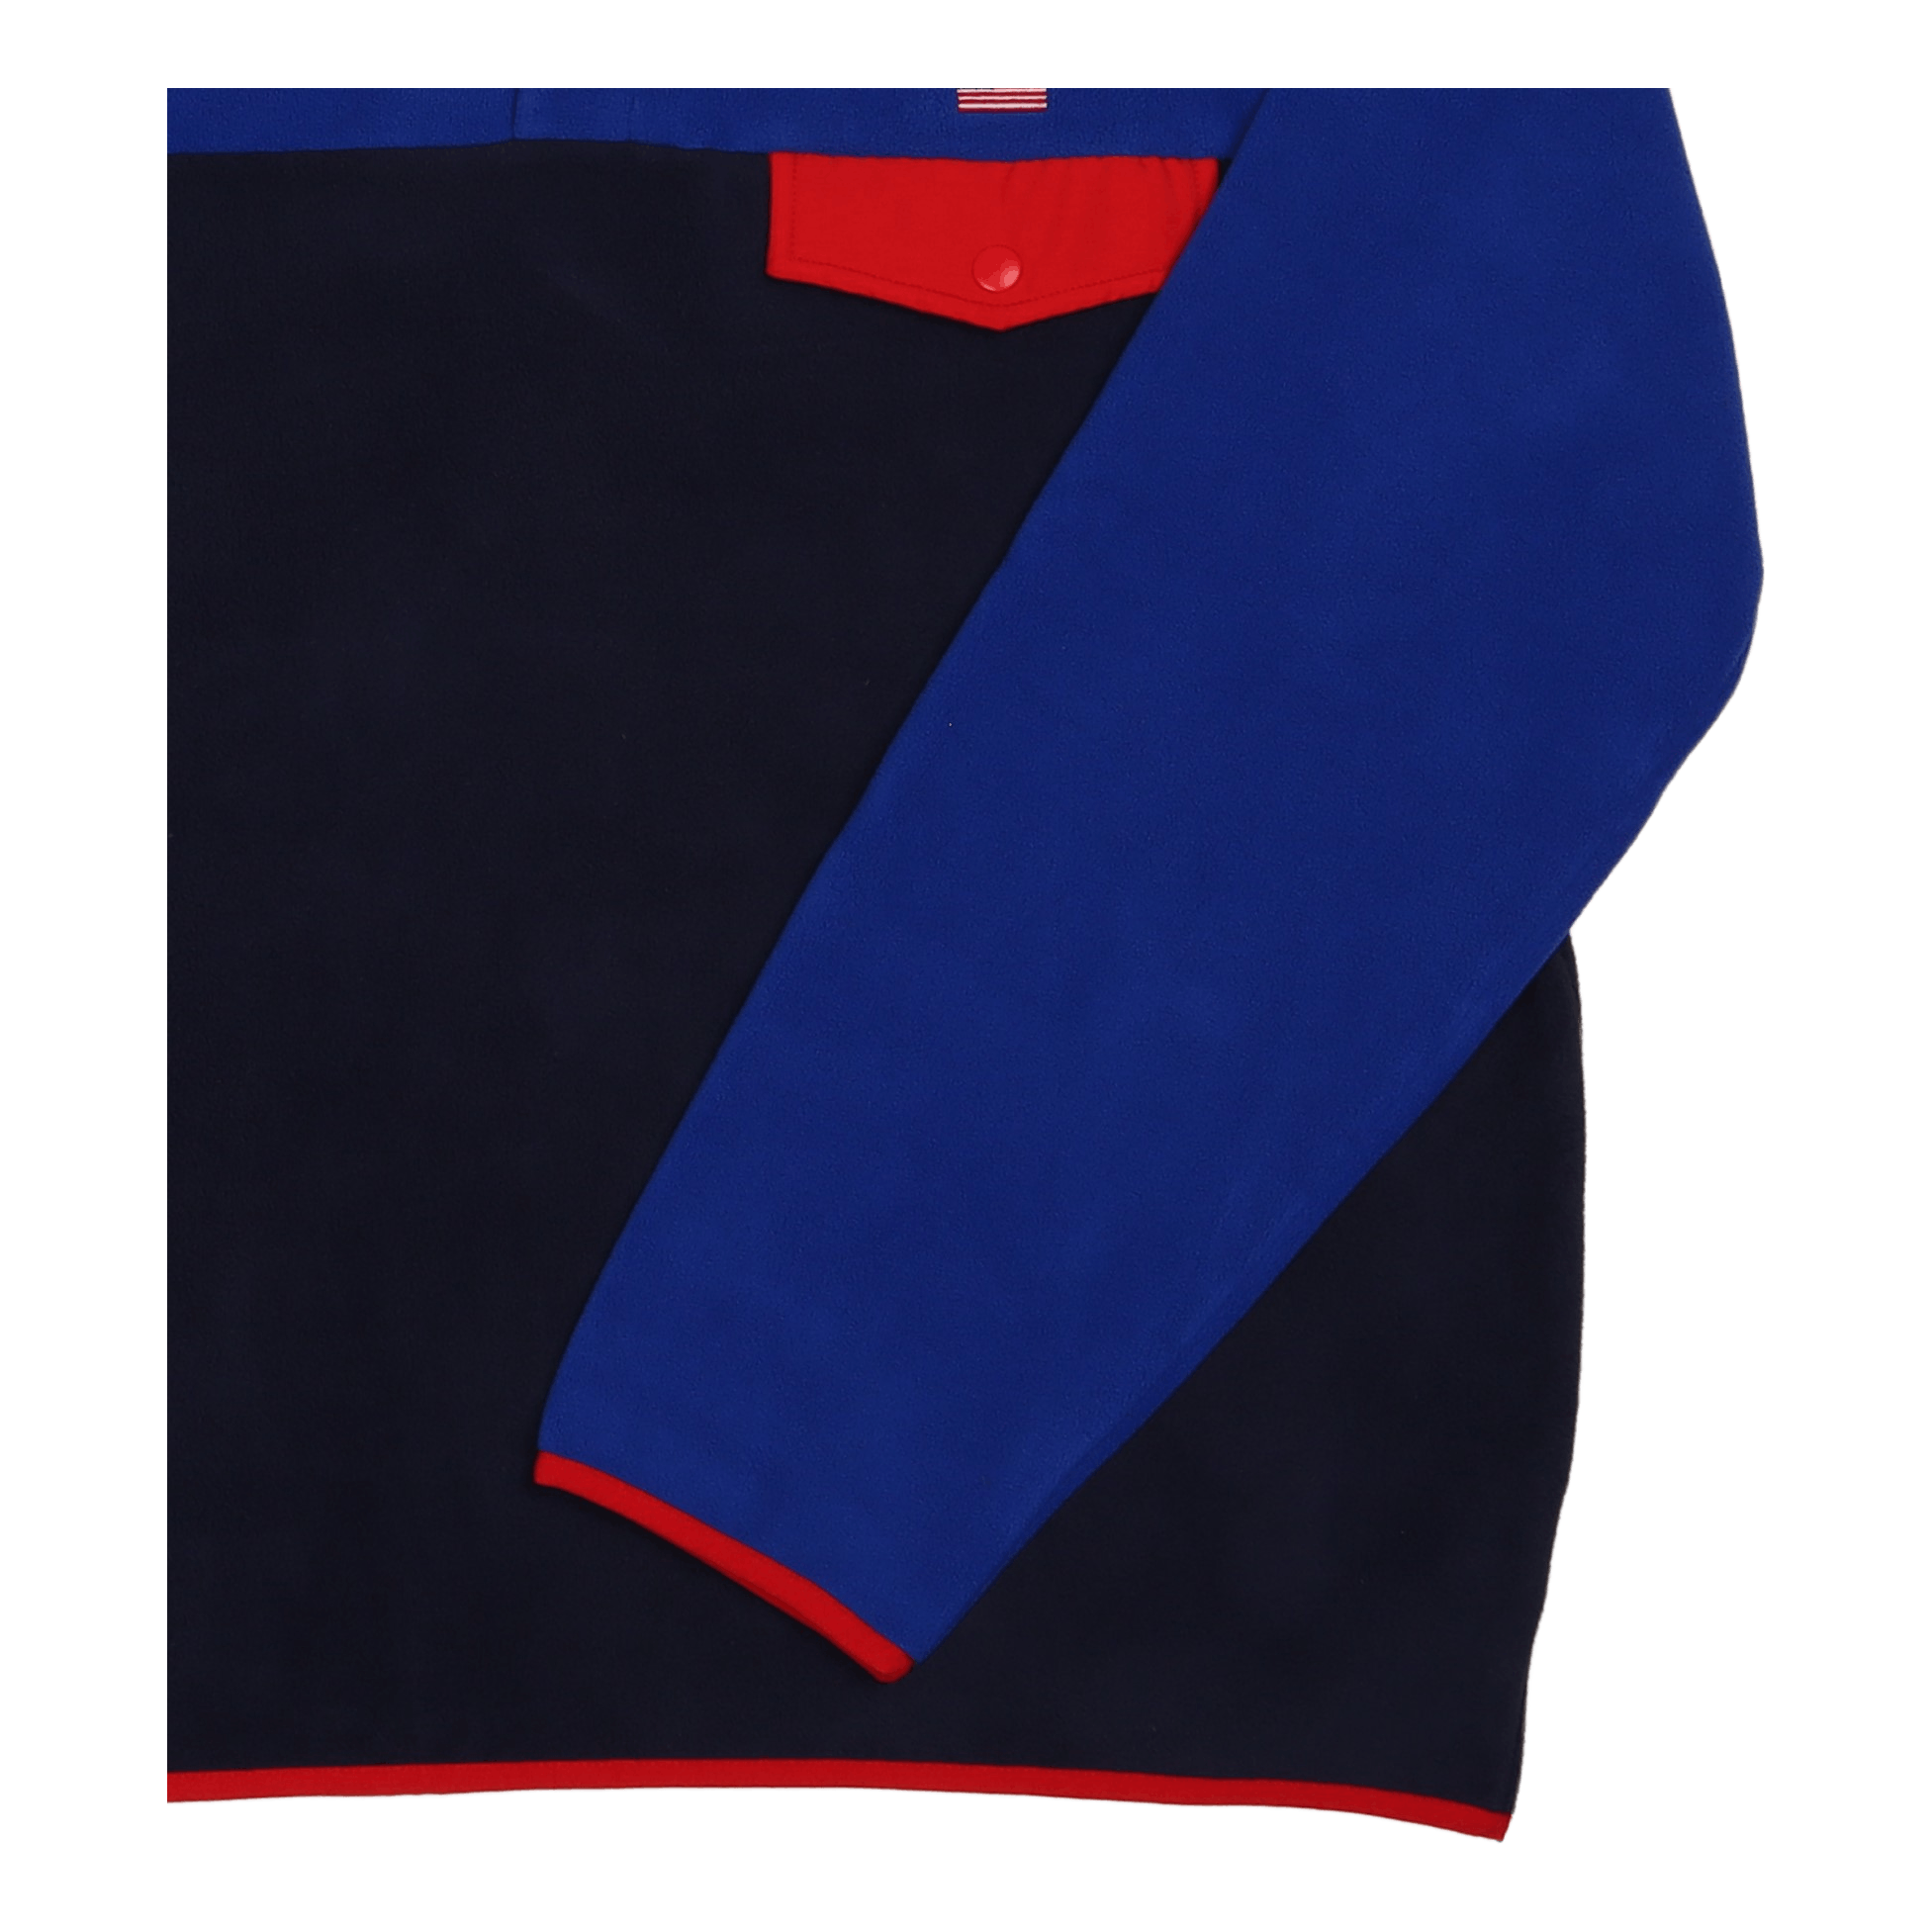 Polo Sport Fleece Sweatshirt Sapphire Star Multi